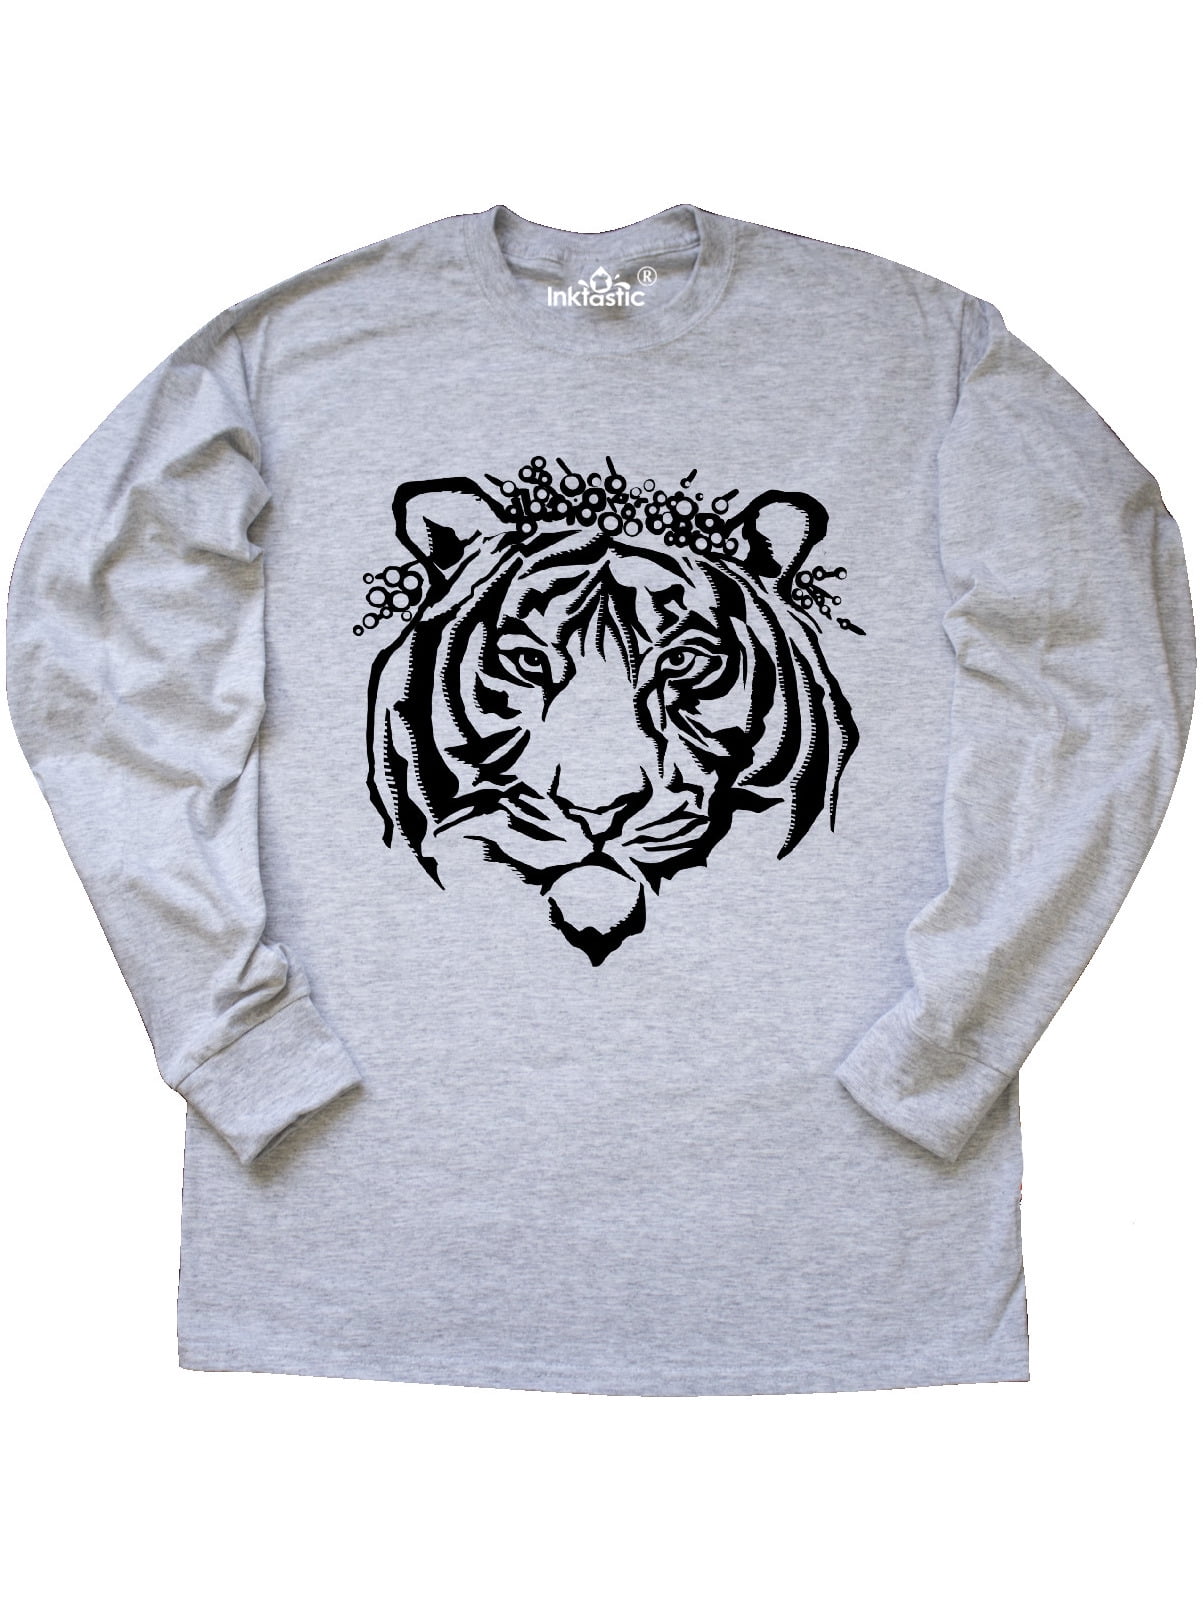 tiger queen shirt